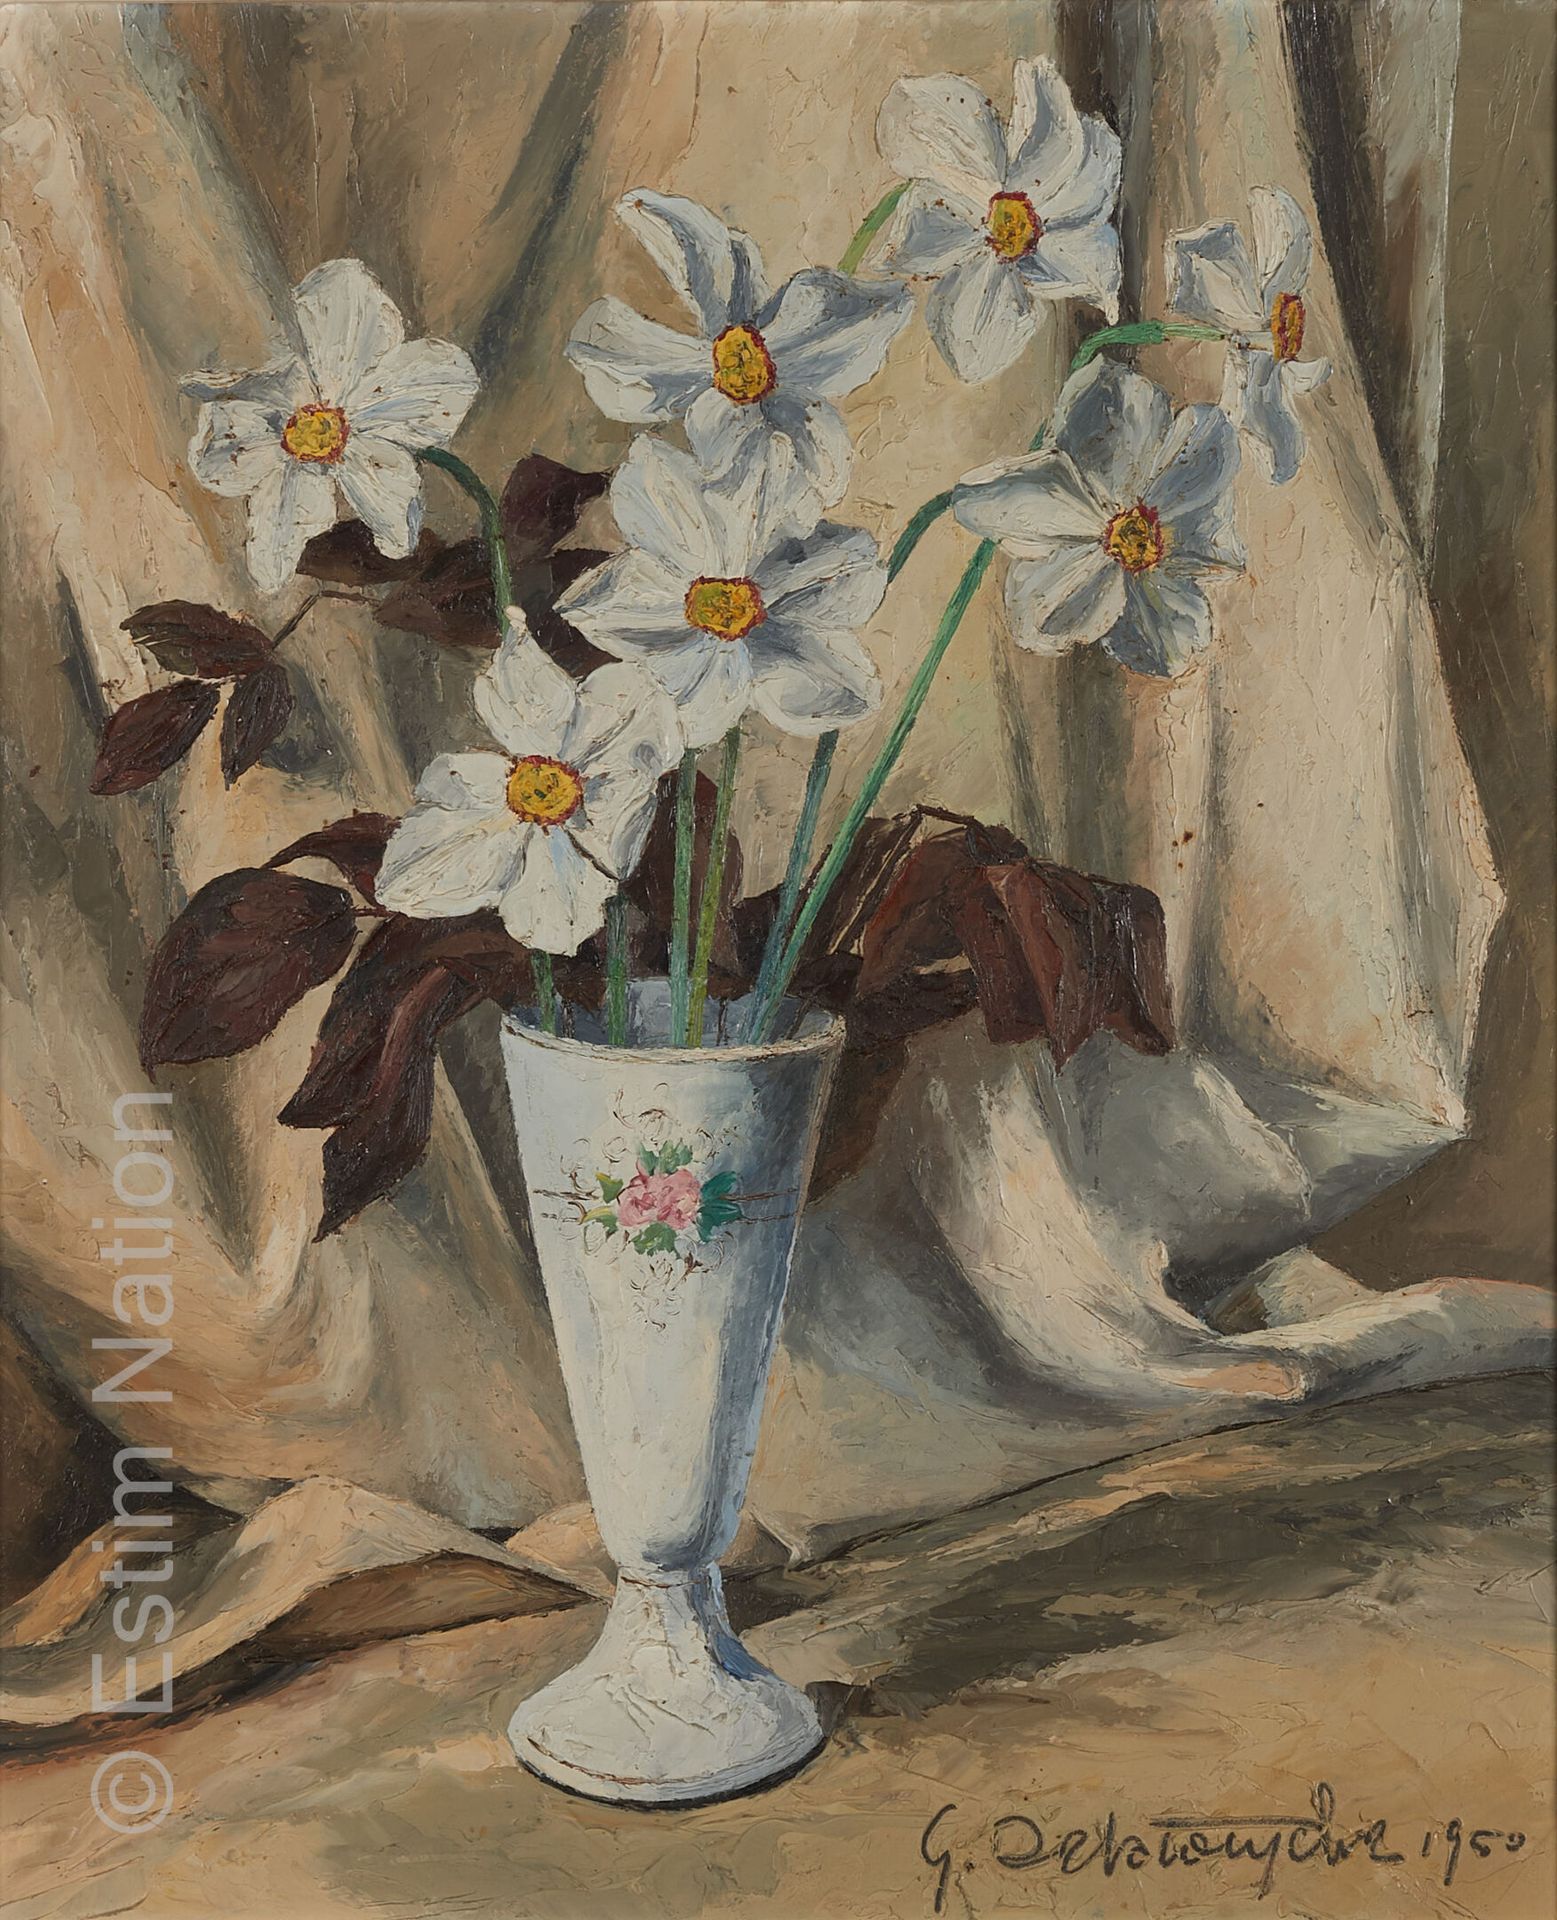 ART DU XXE SIECLE Germain DELATOUSCHE (1898-1966)

"Narcisses"
Nature morte aux &hellip;